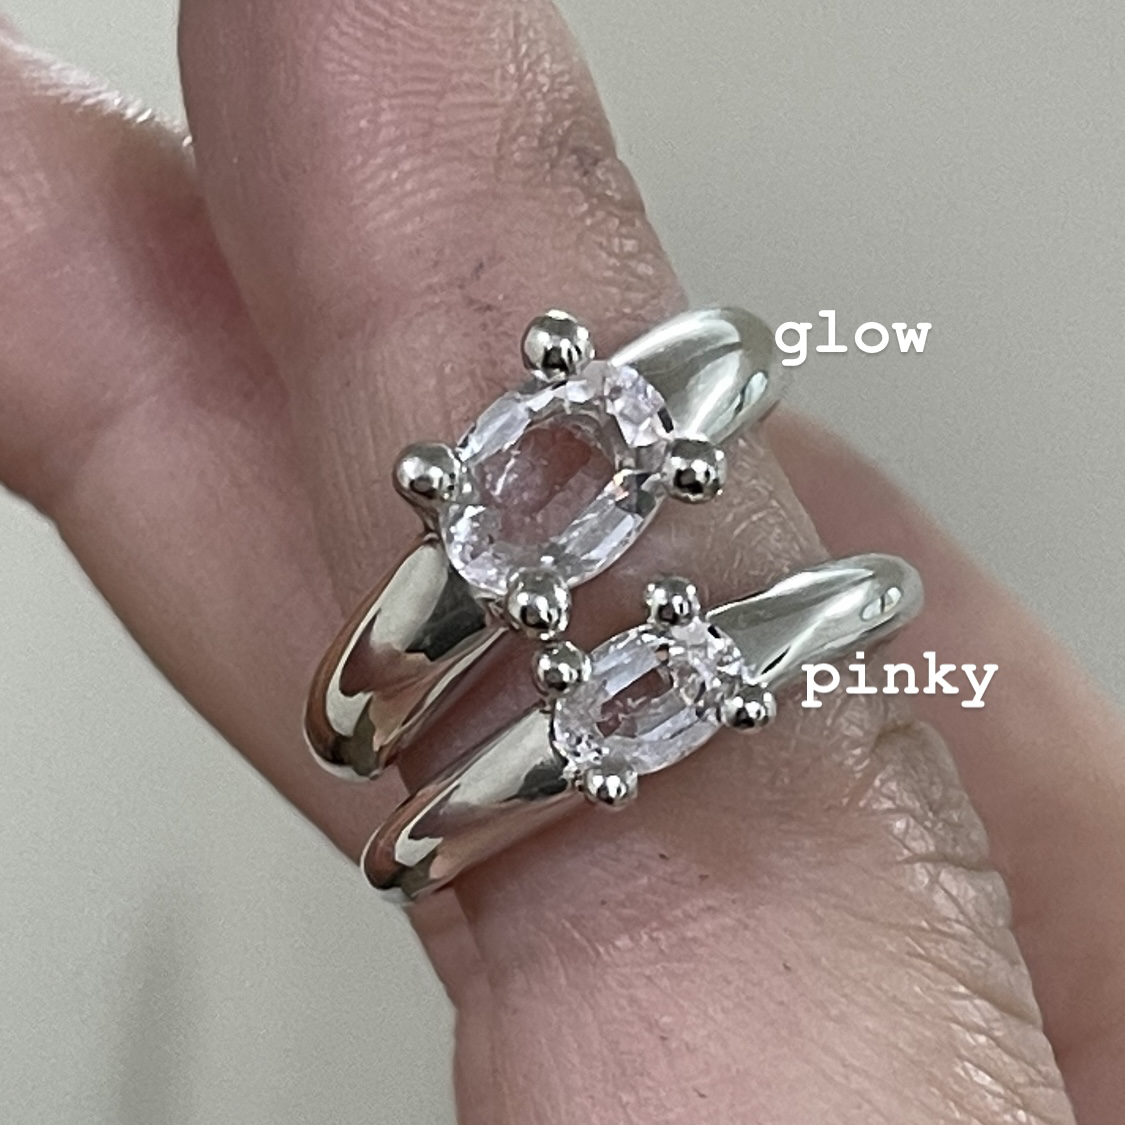 하이메 pinky / glow mushroom ring (natural morganite version)